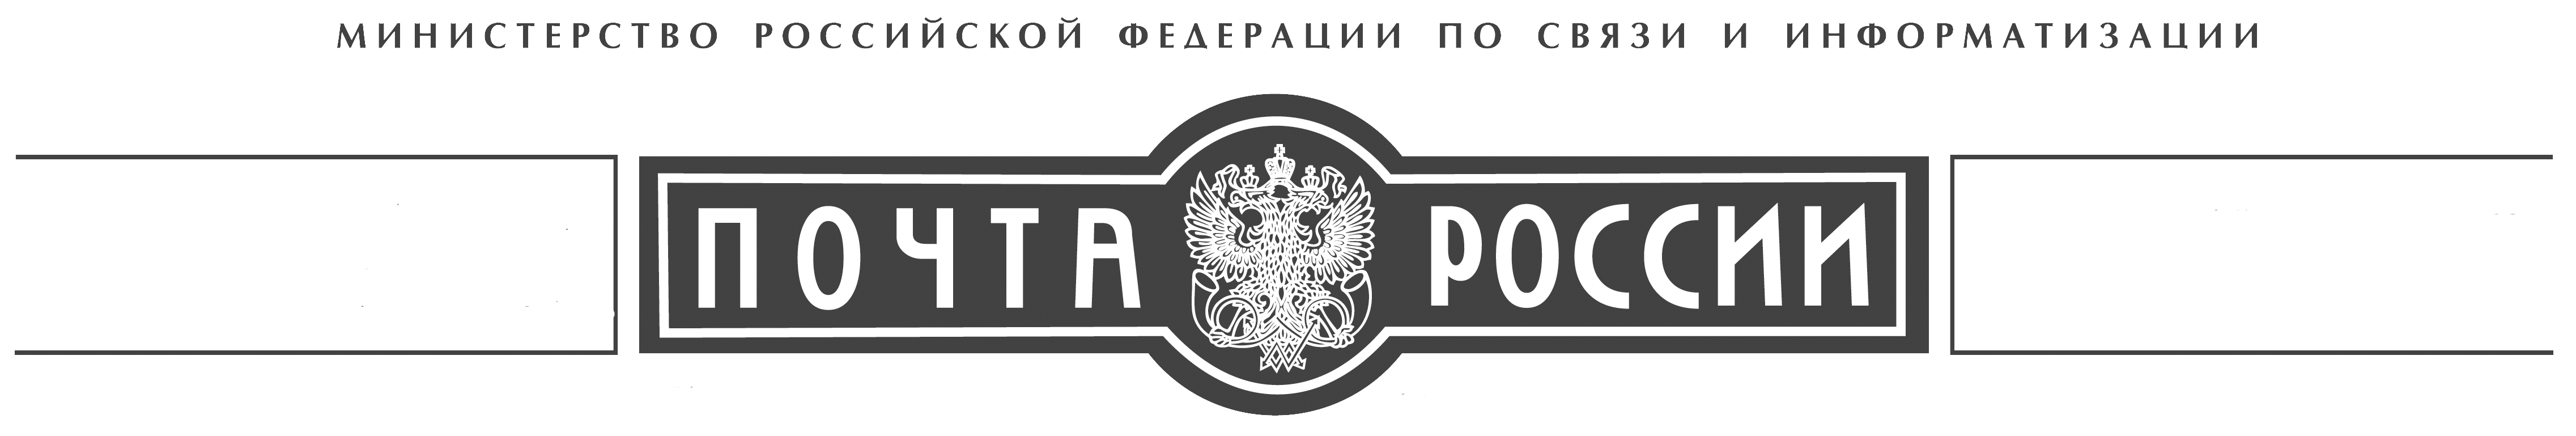 Герб почты России